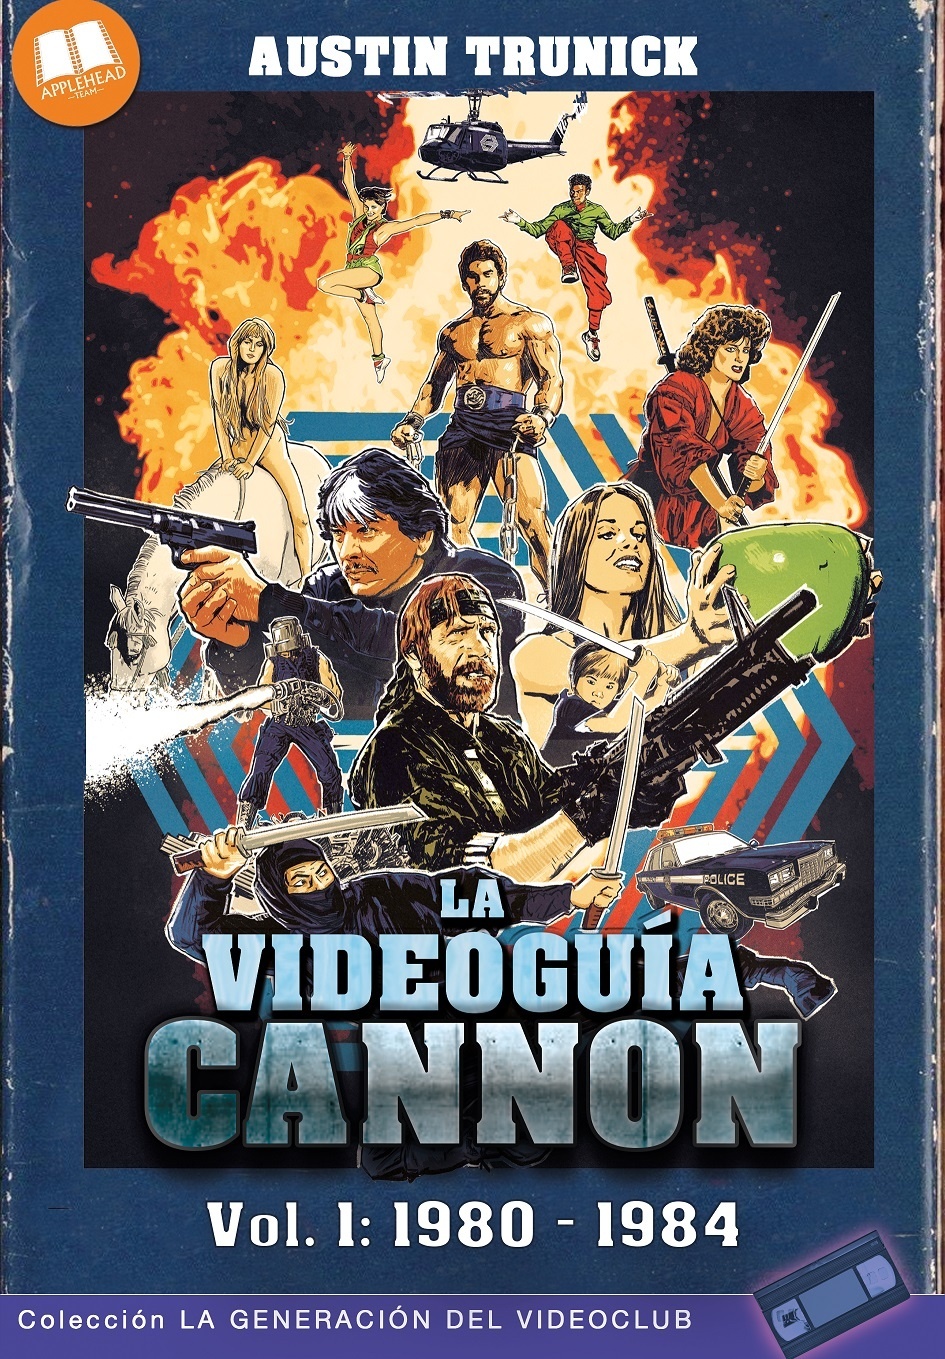 Videoguía Cannon vol. 1: 1980 - 1984